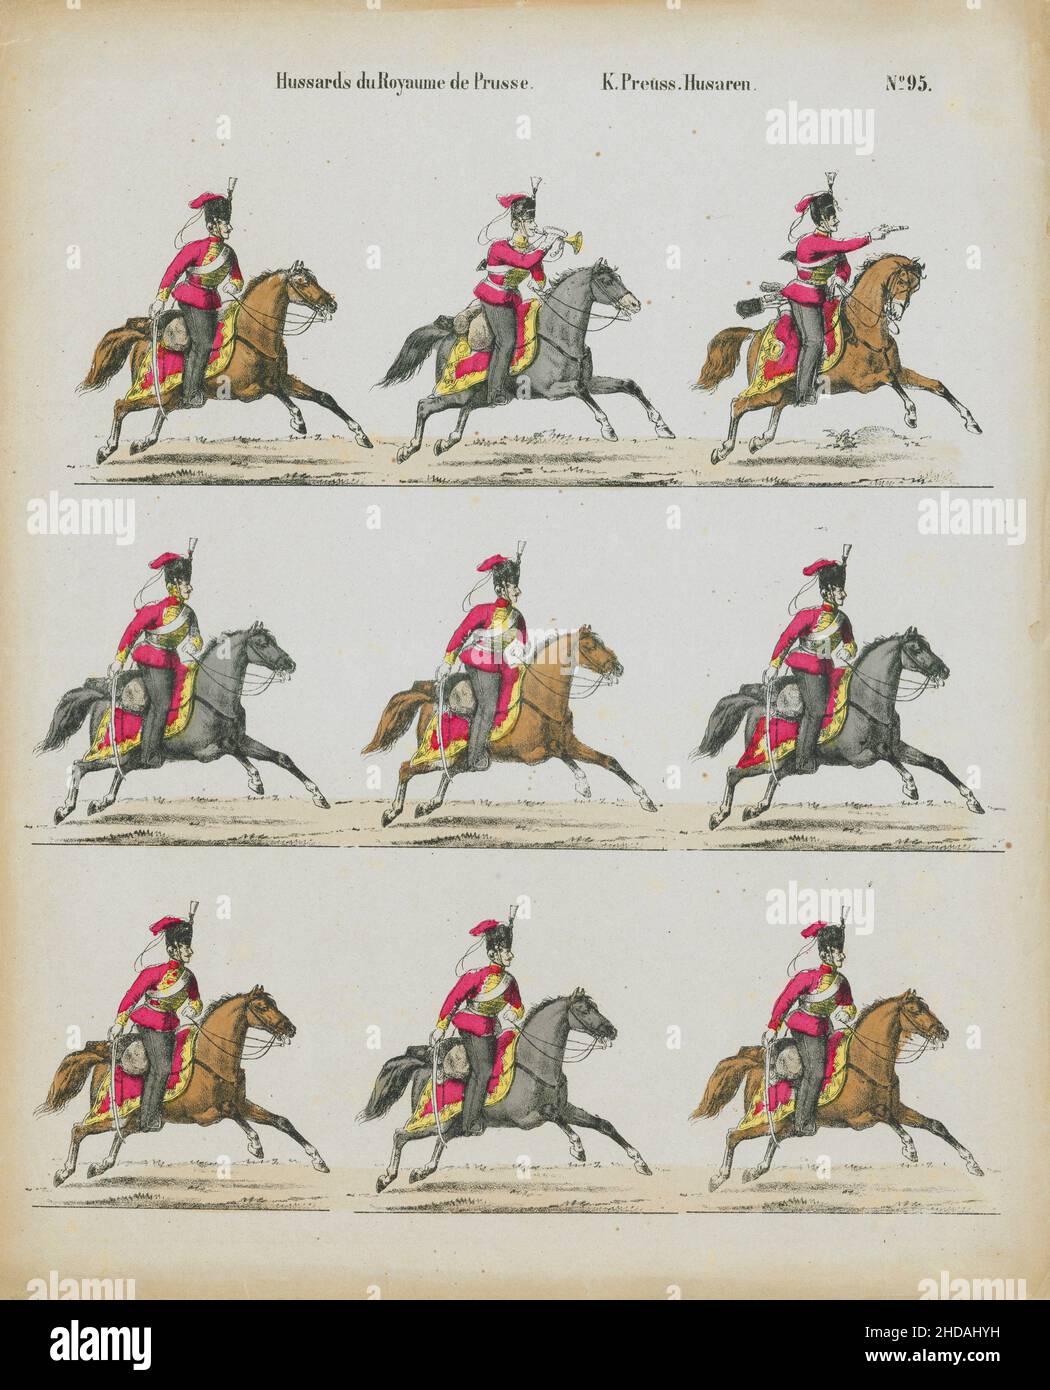 Litografia vintage degli Hussars del Regno di Prussia. Cavalleria prussiana. Hussars. 1870 Foto Stock